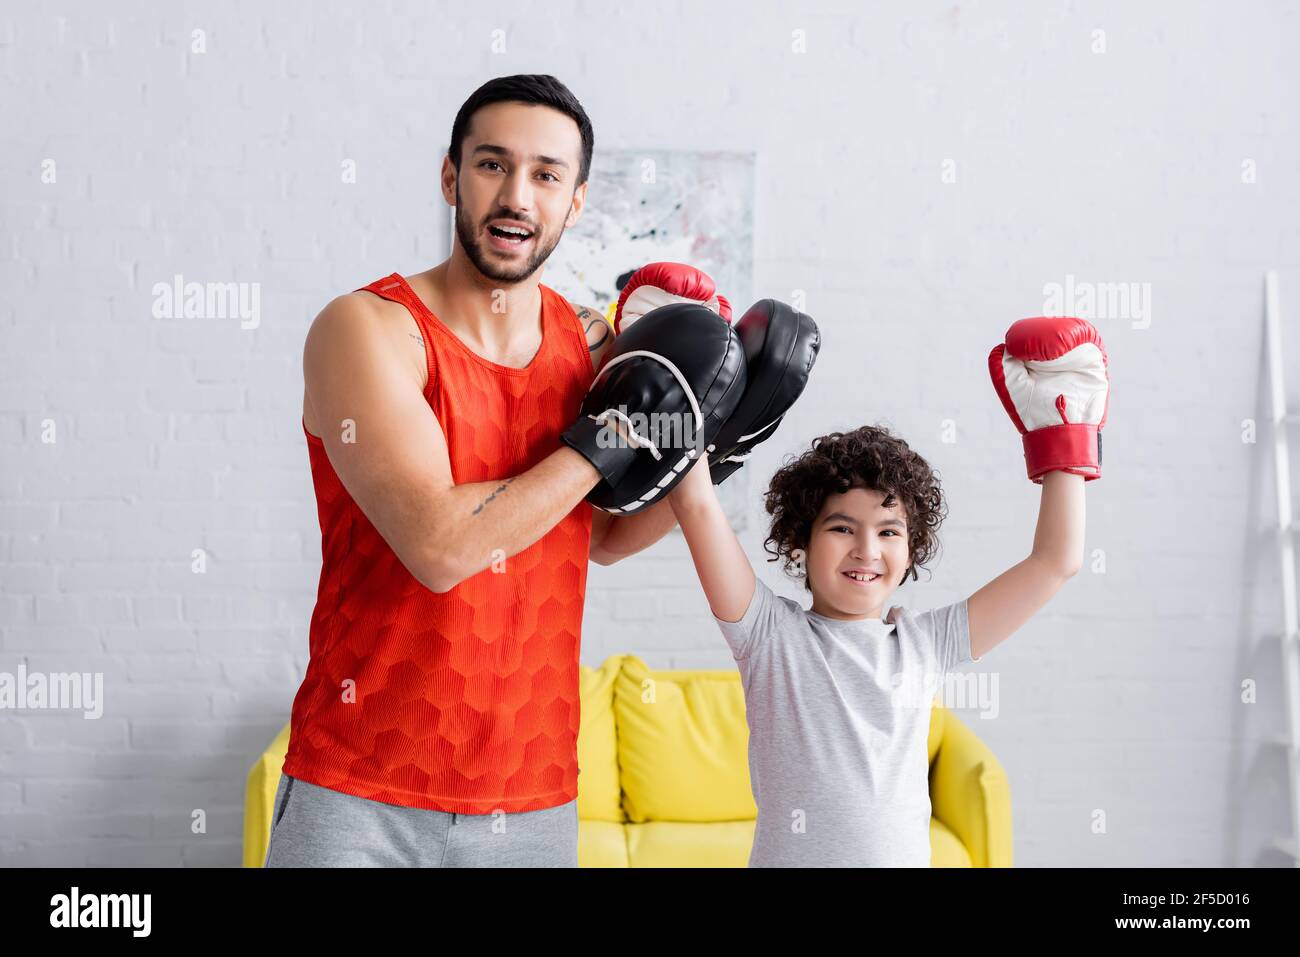 Joyeux père musulman dans des mitaines de punch levant la main de son fils en gants de boxe Banque D'Images